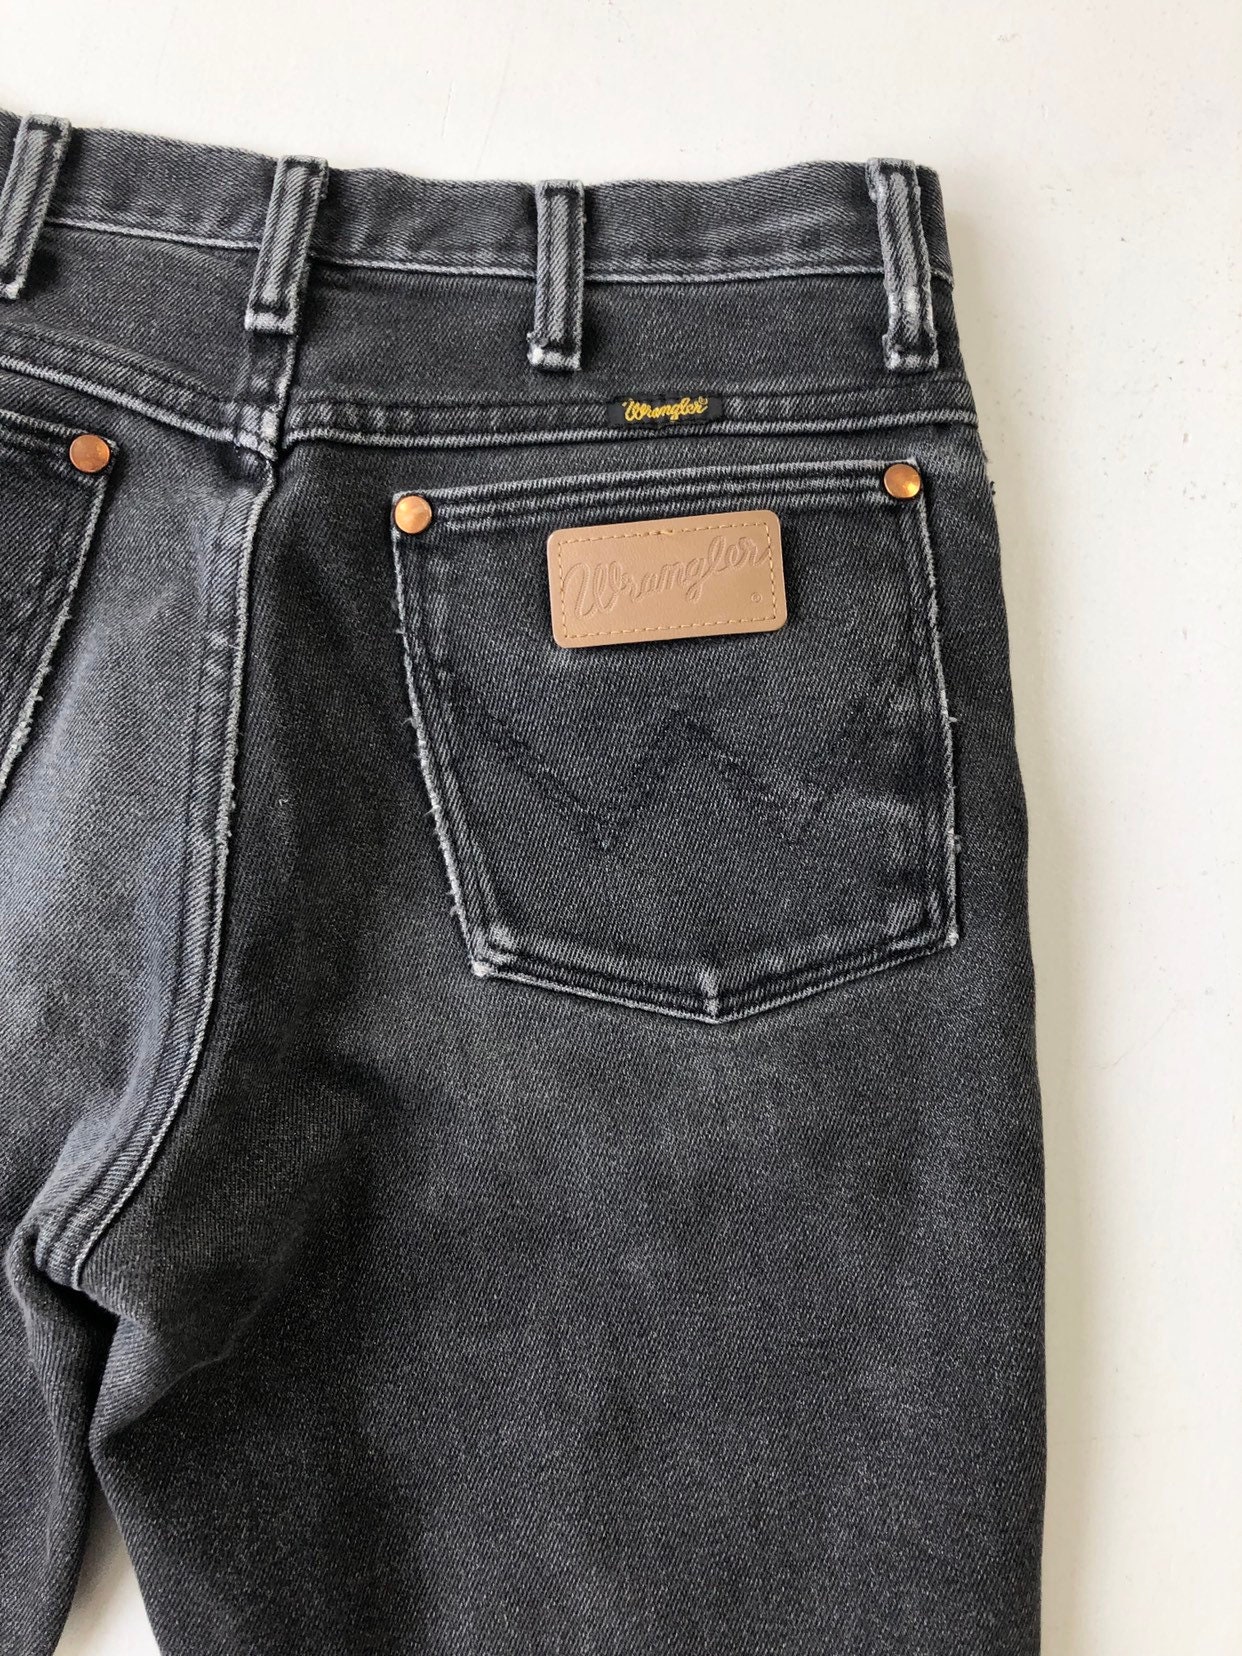 1980s Black Denim Wrangler Jeans 28 Waist | Etsy